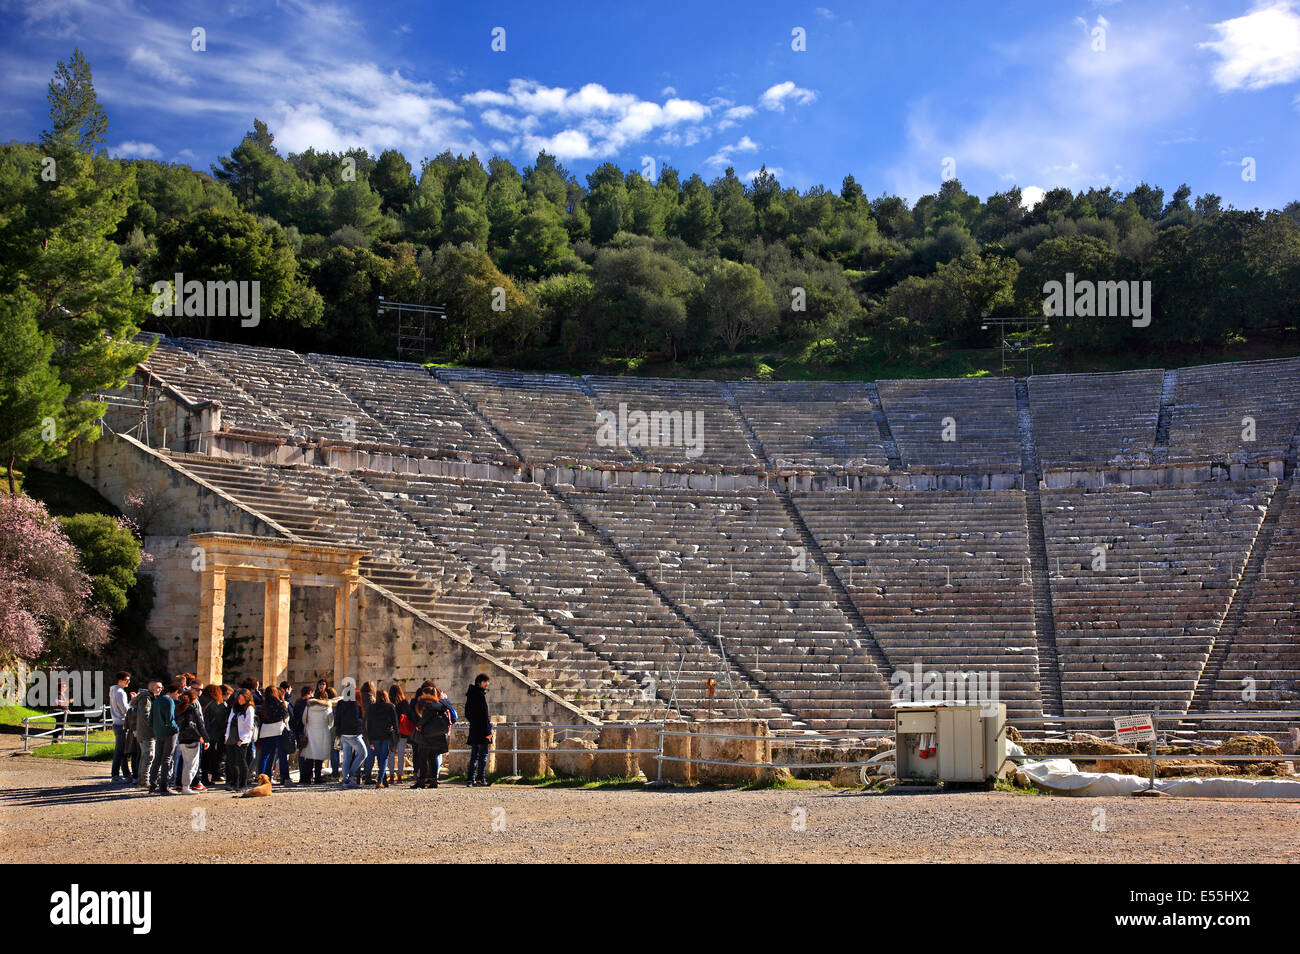 Le théâtre antique d'Épidaure (Epidaure), Argolide (Argolide), Péloponnèse, Grèce. Banque D'Images